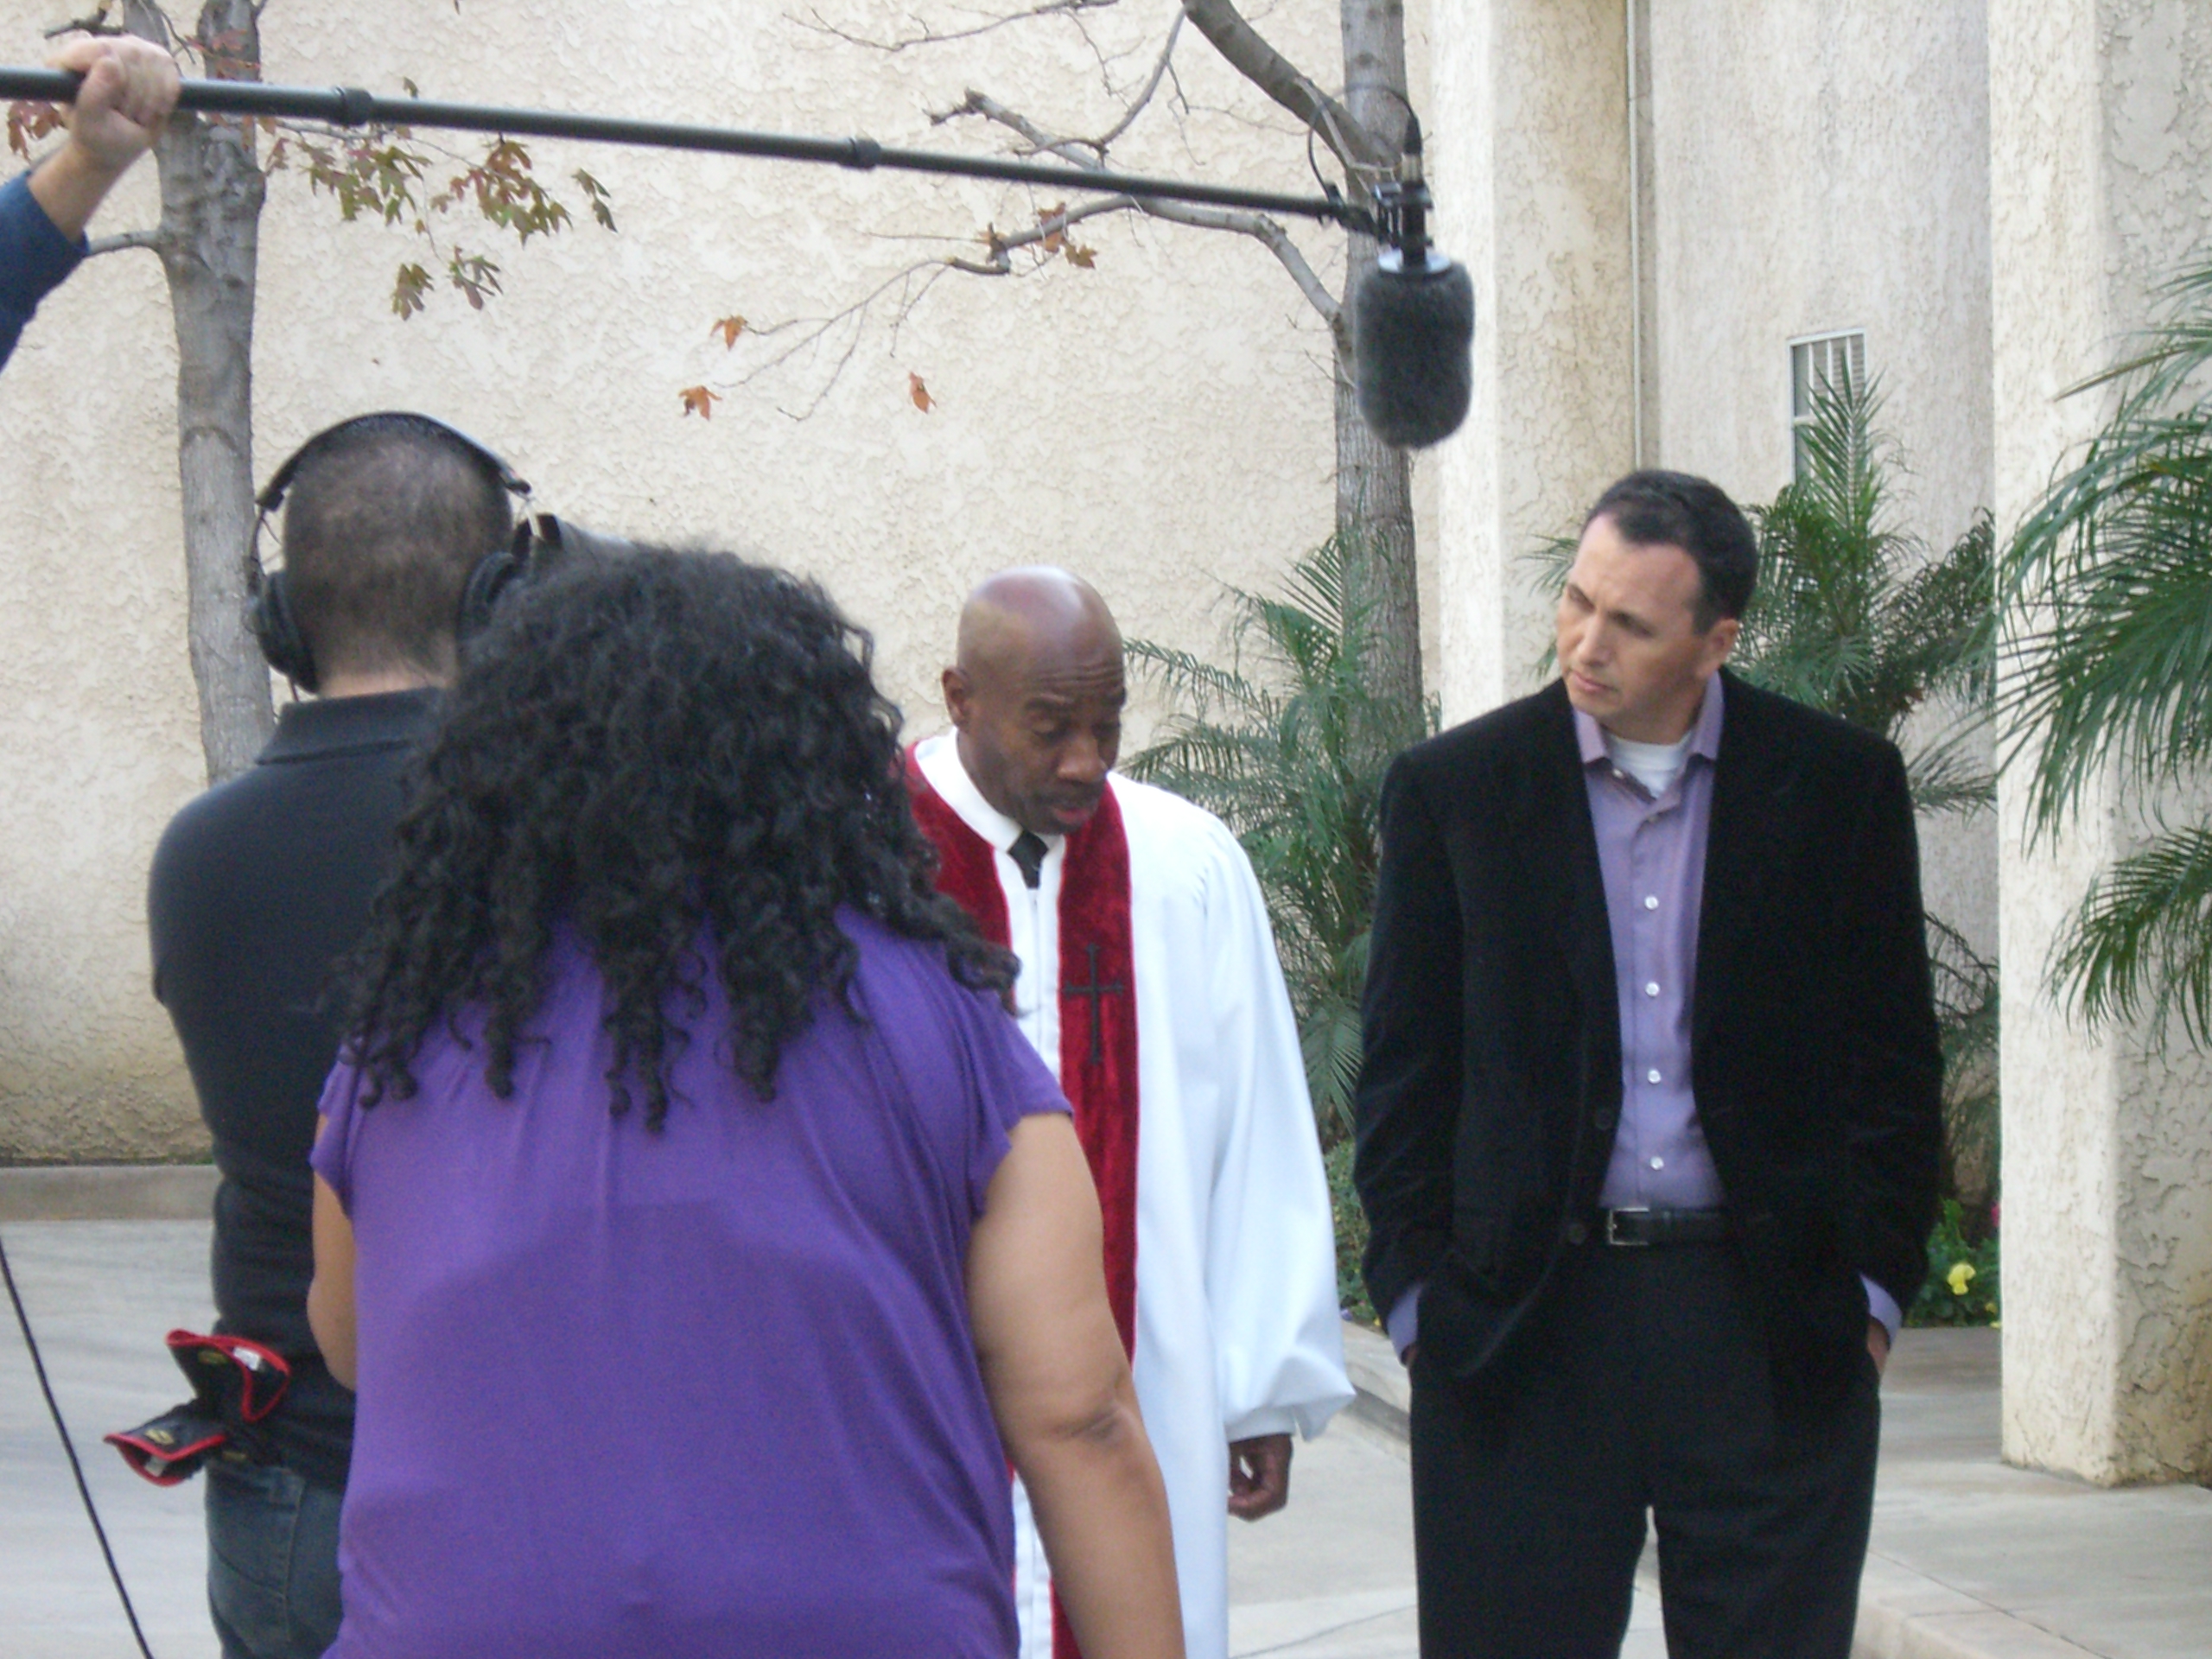 Pastor Edwards from Pasadena in a scene